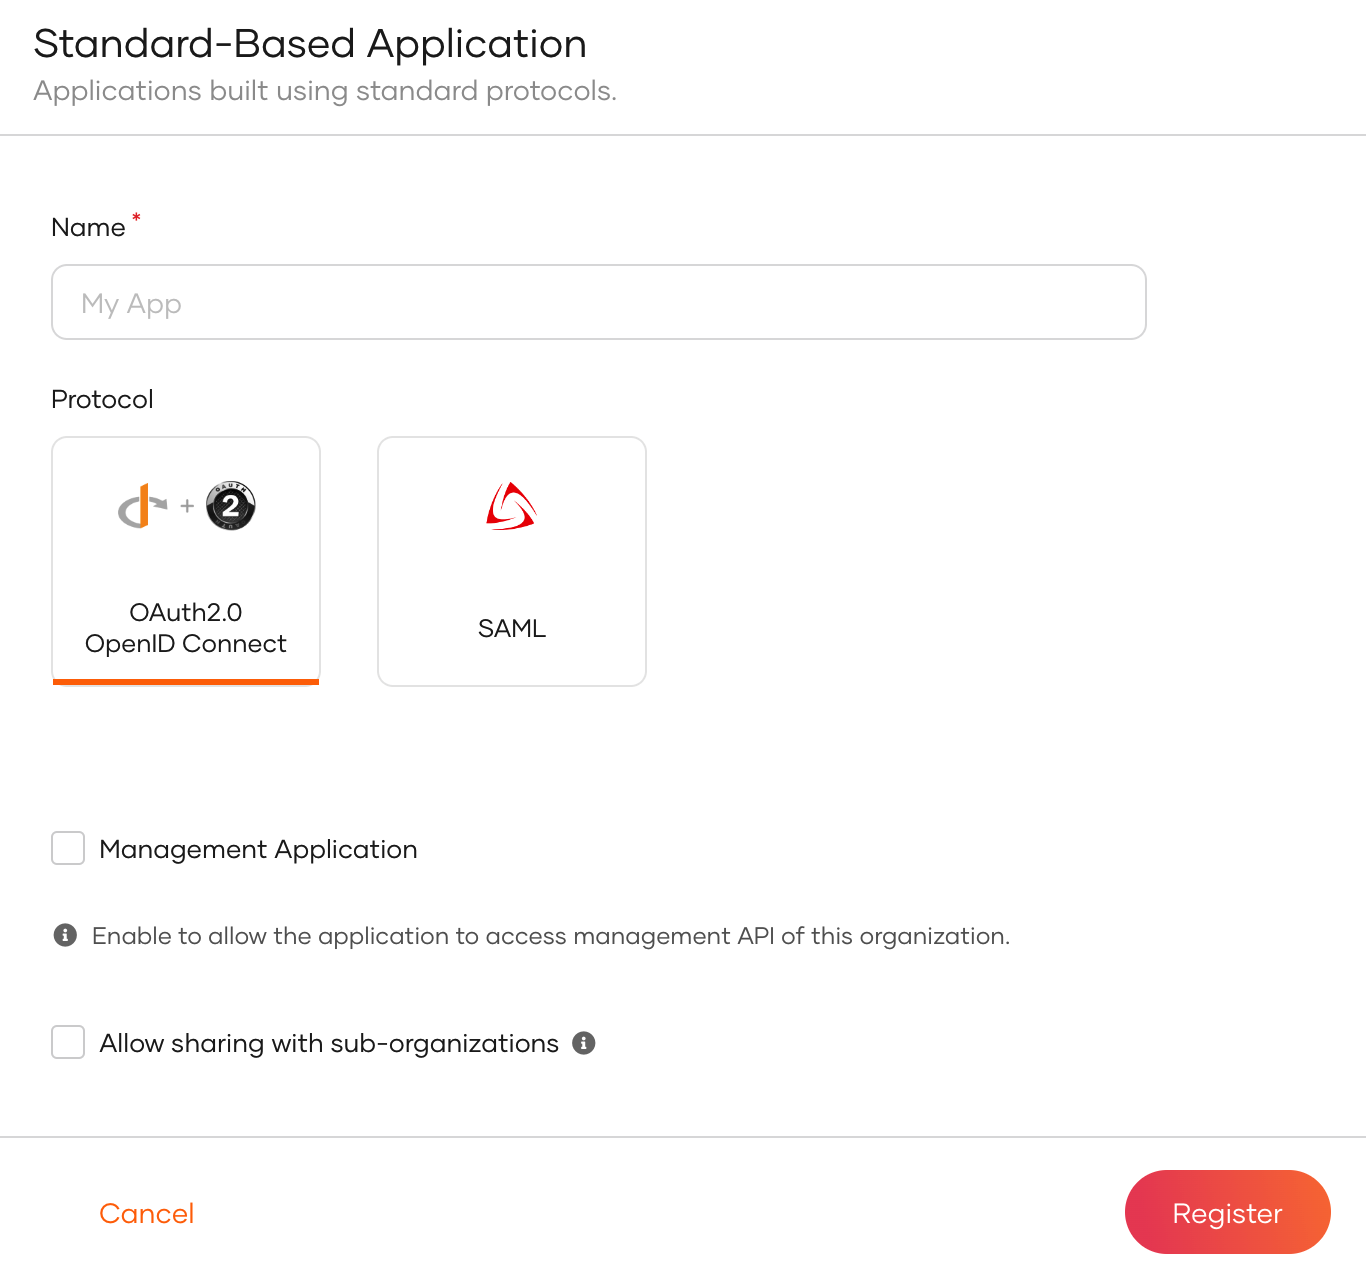 Register a standard-based application